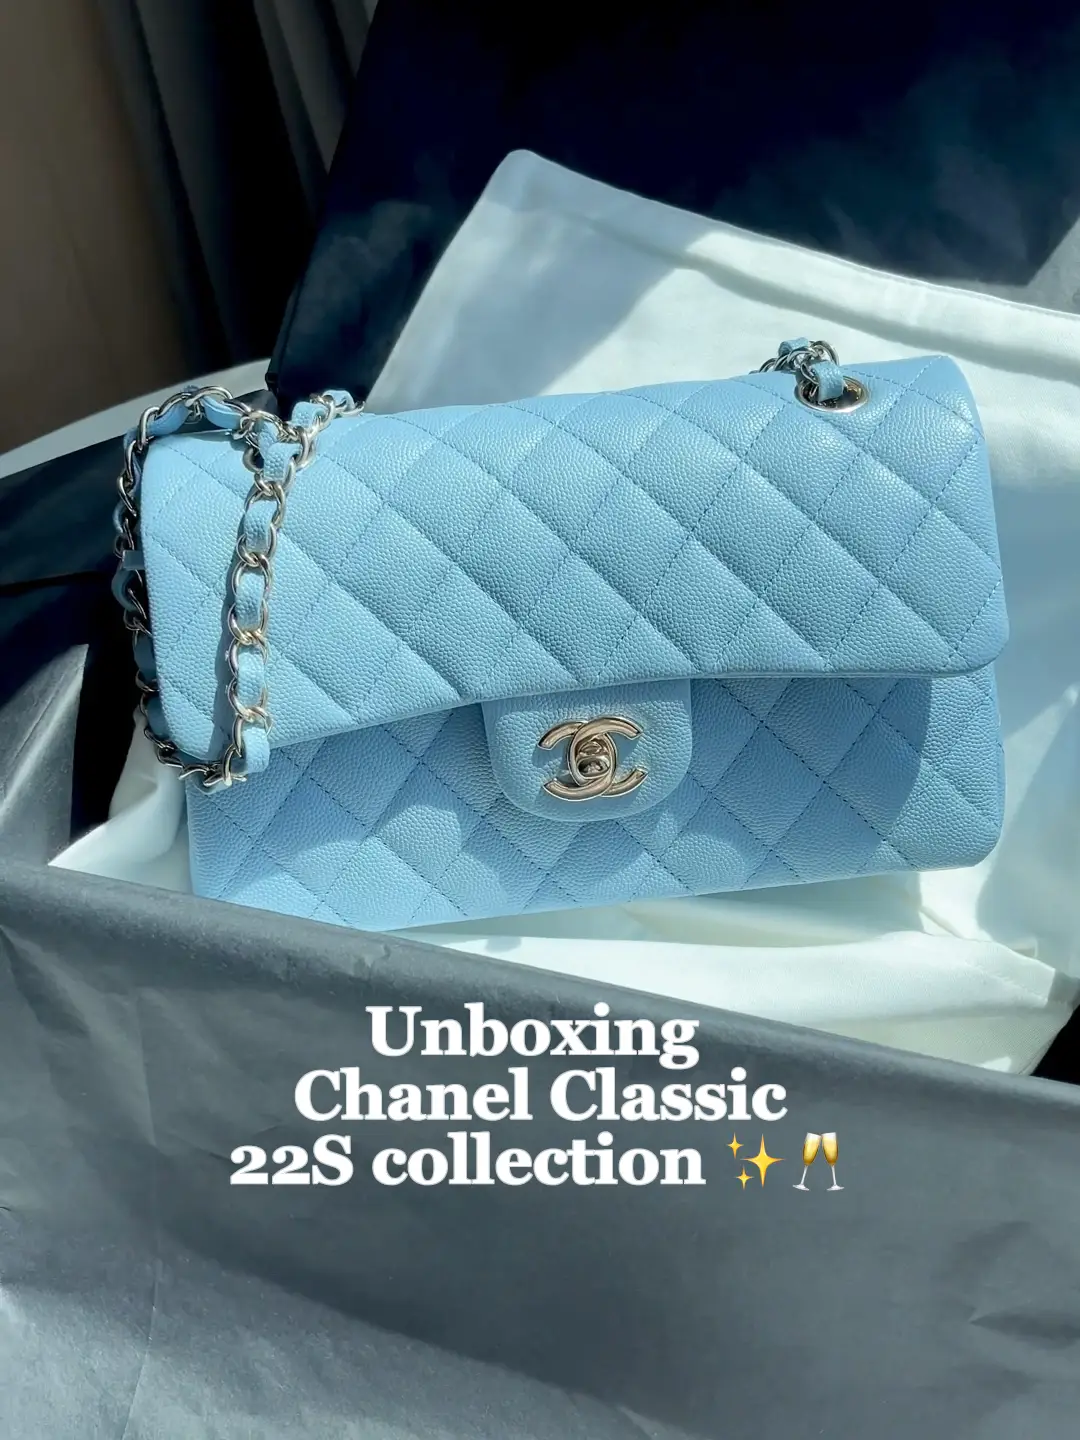 Chanel 19 Handbags - 395 For Sale on 1stDibs